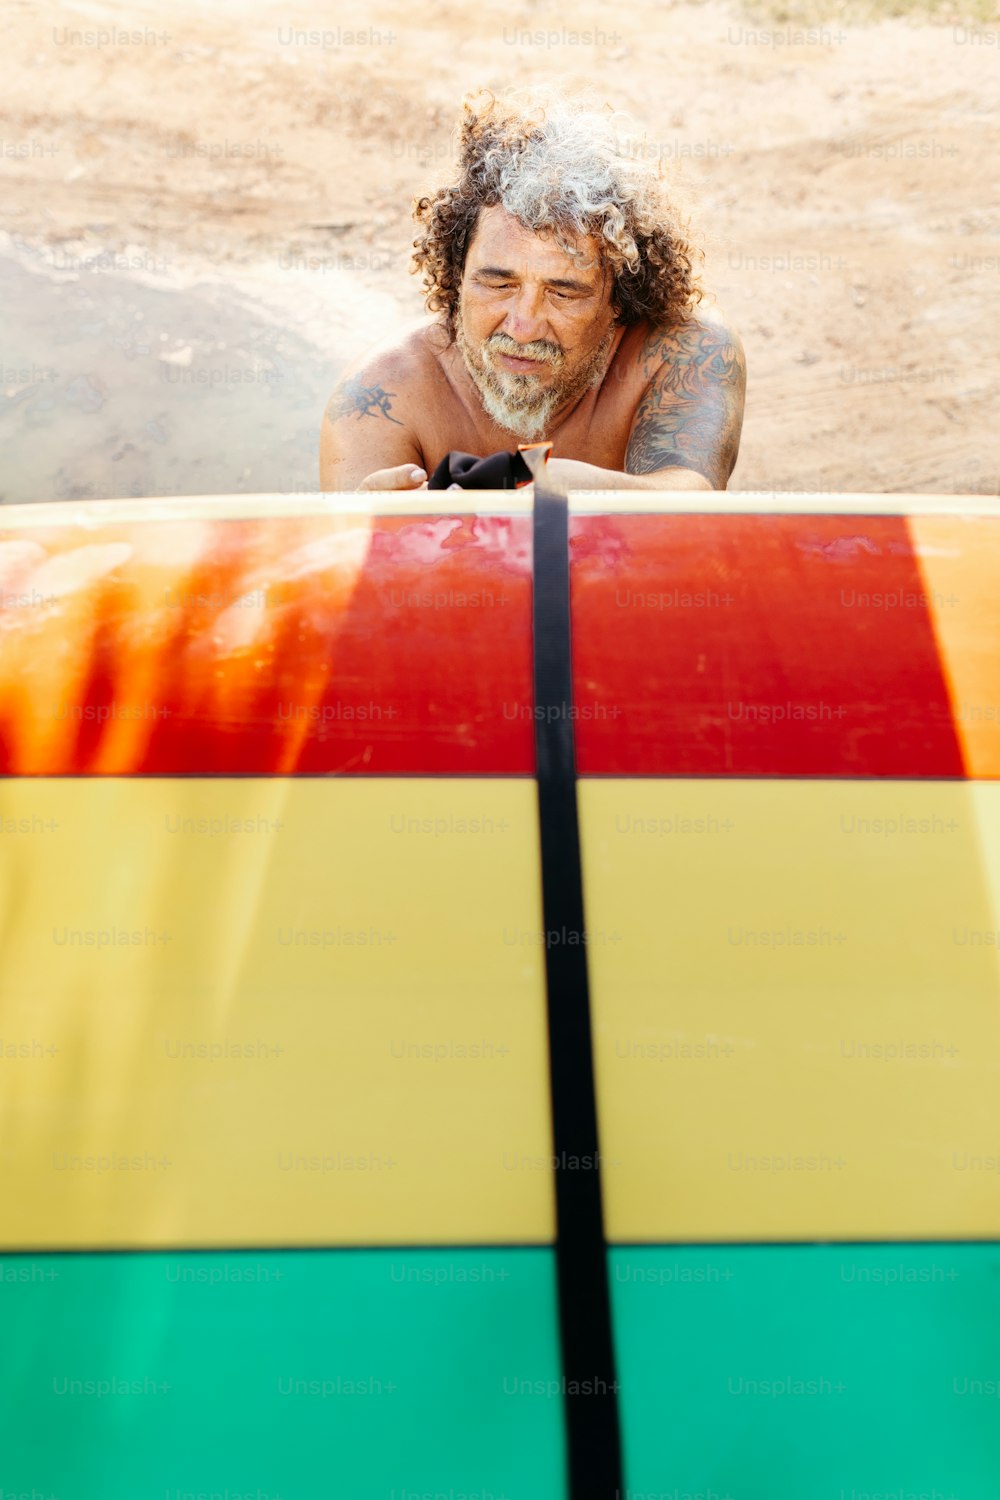 Un uomo appoggiato su una tavola da surf nella sabbia